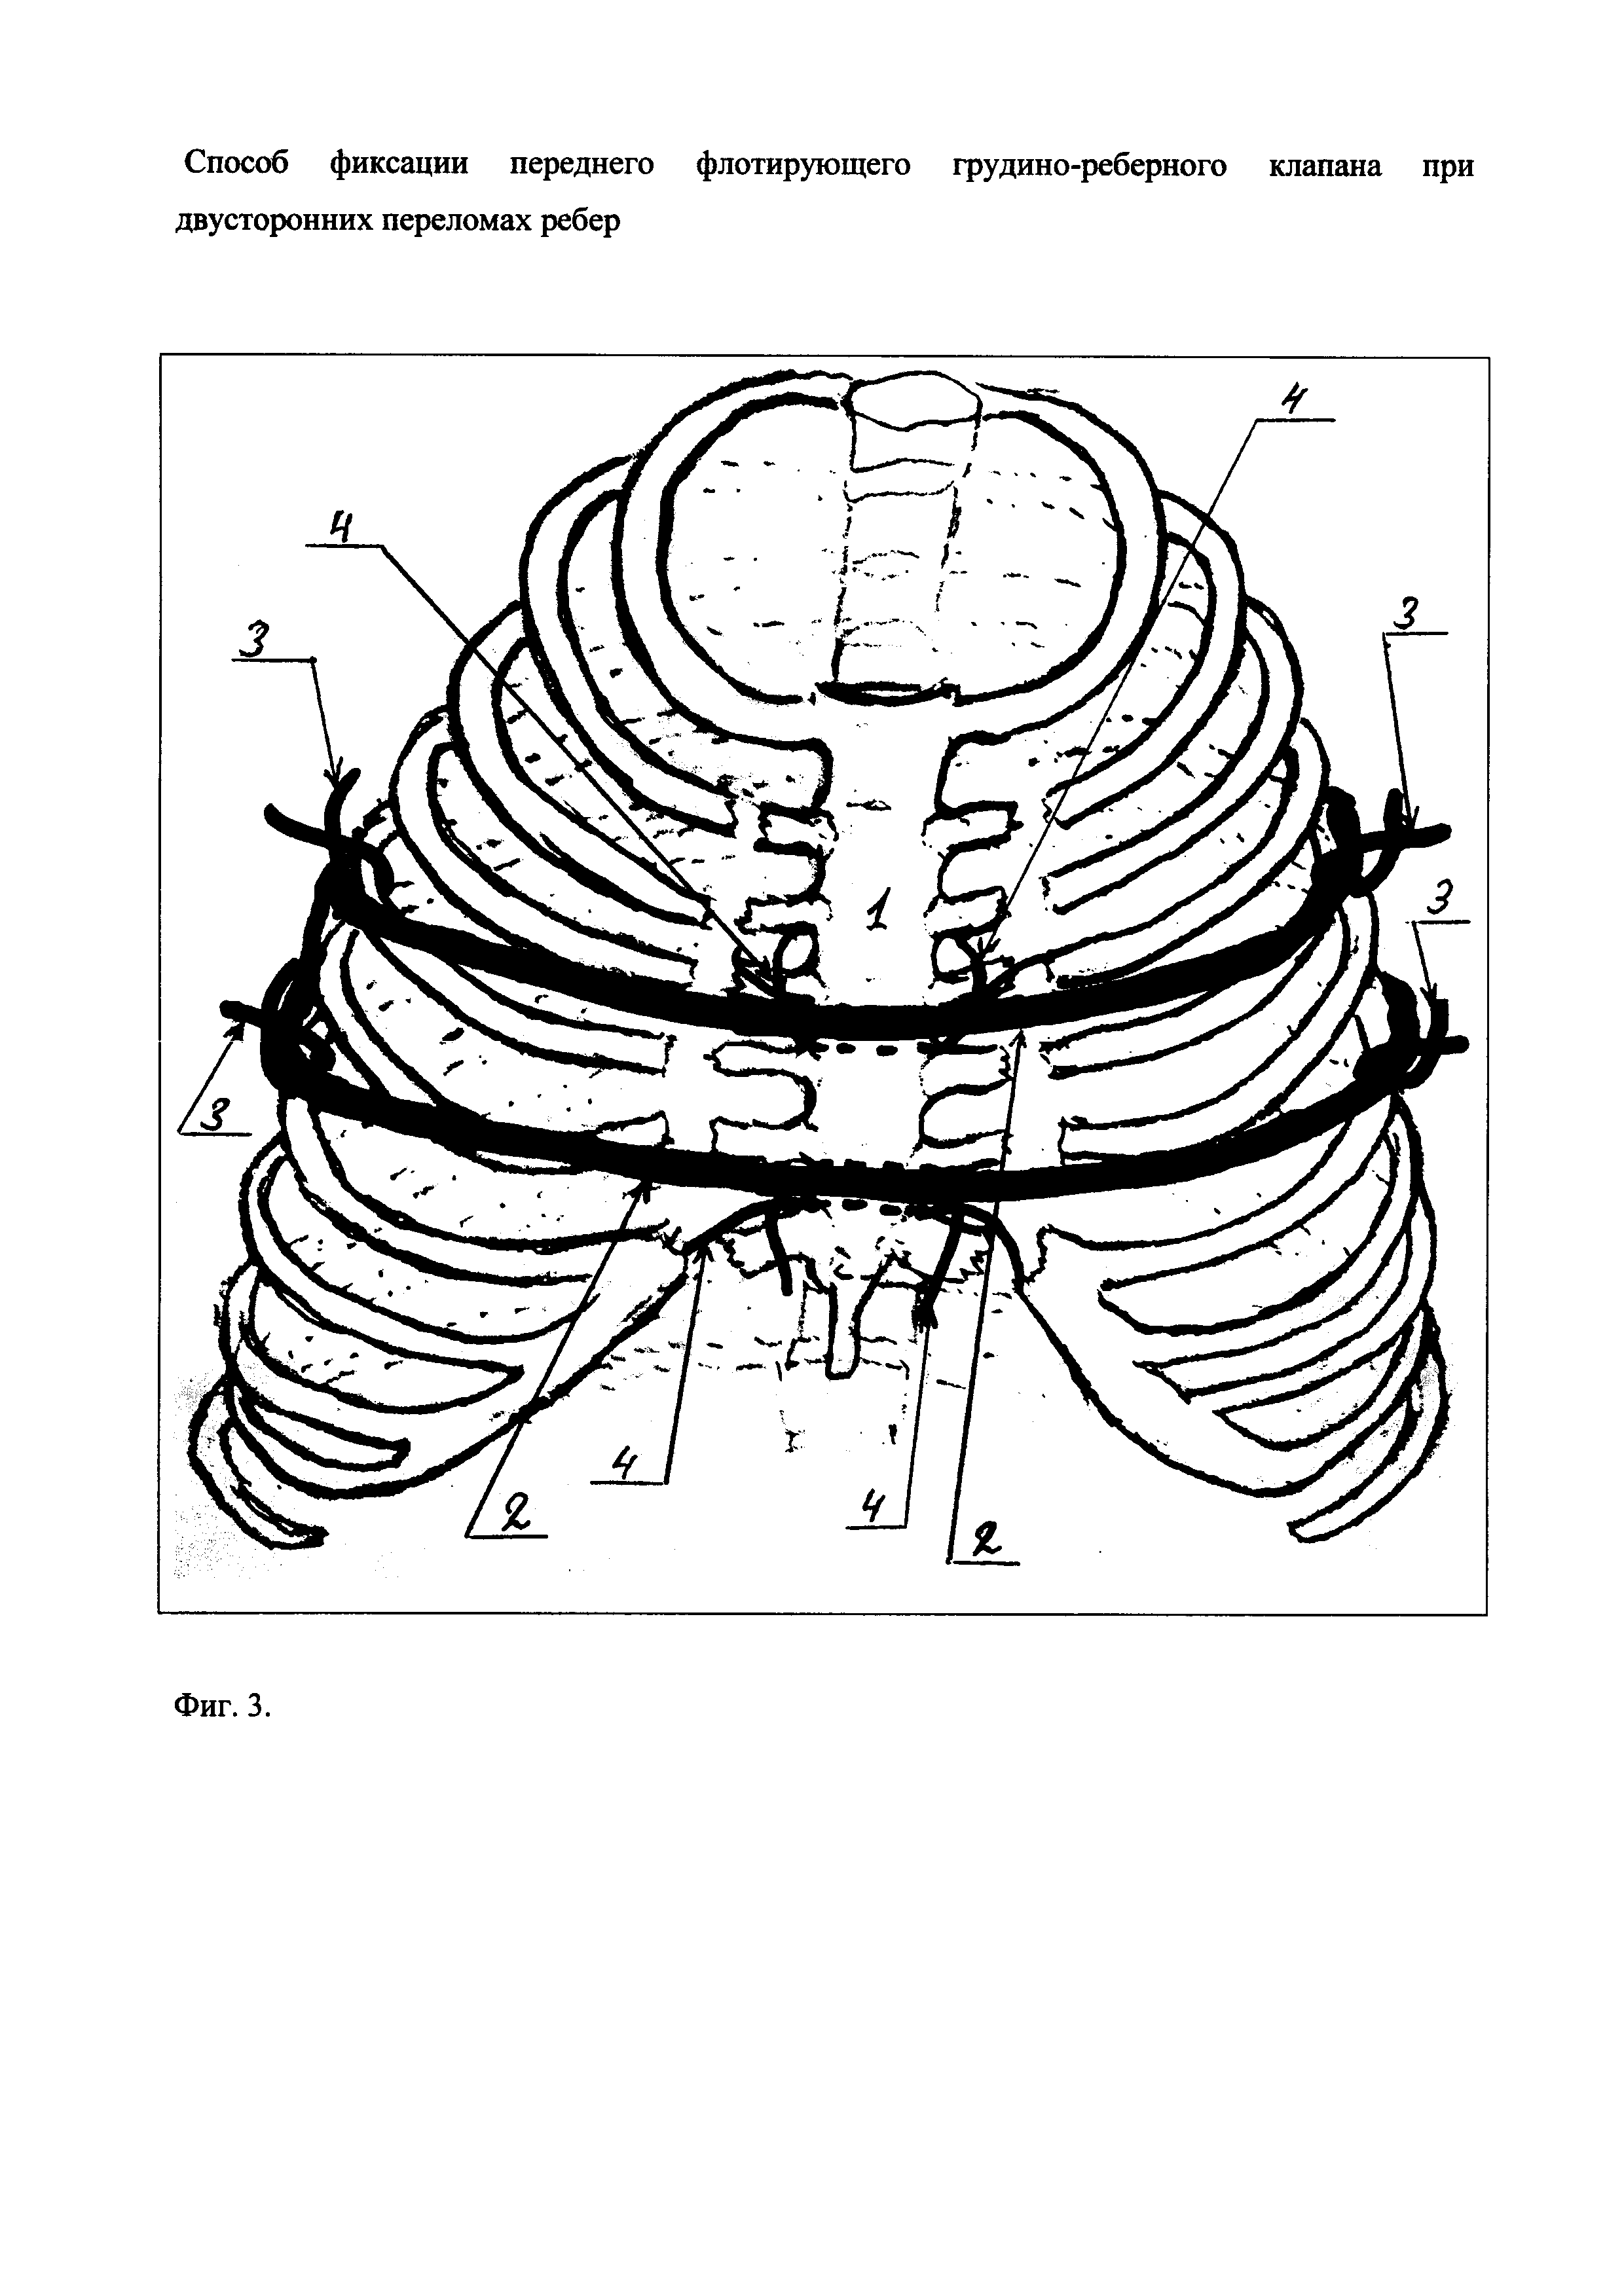 Способ фиксации переднего флотирующего грудино-реберного клапана при двусторонних переломах ребер